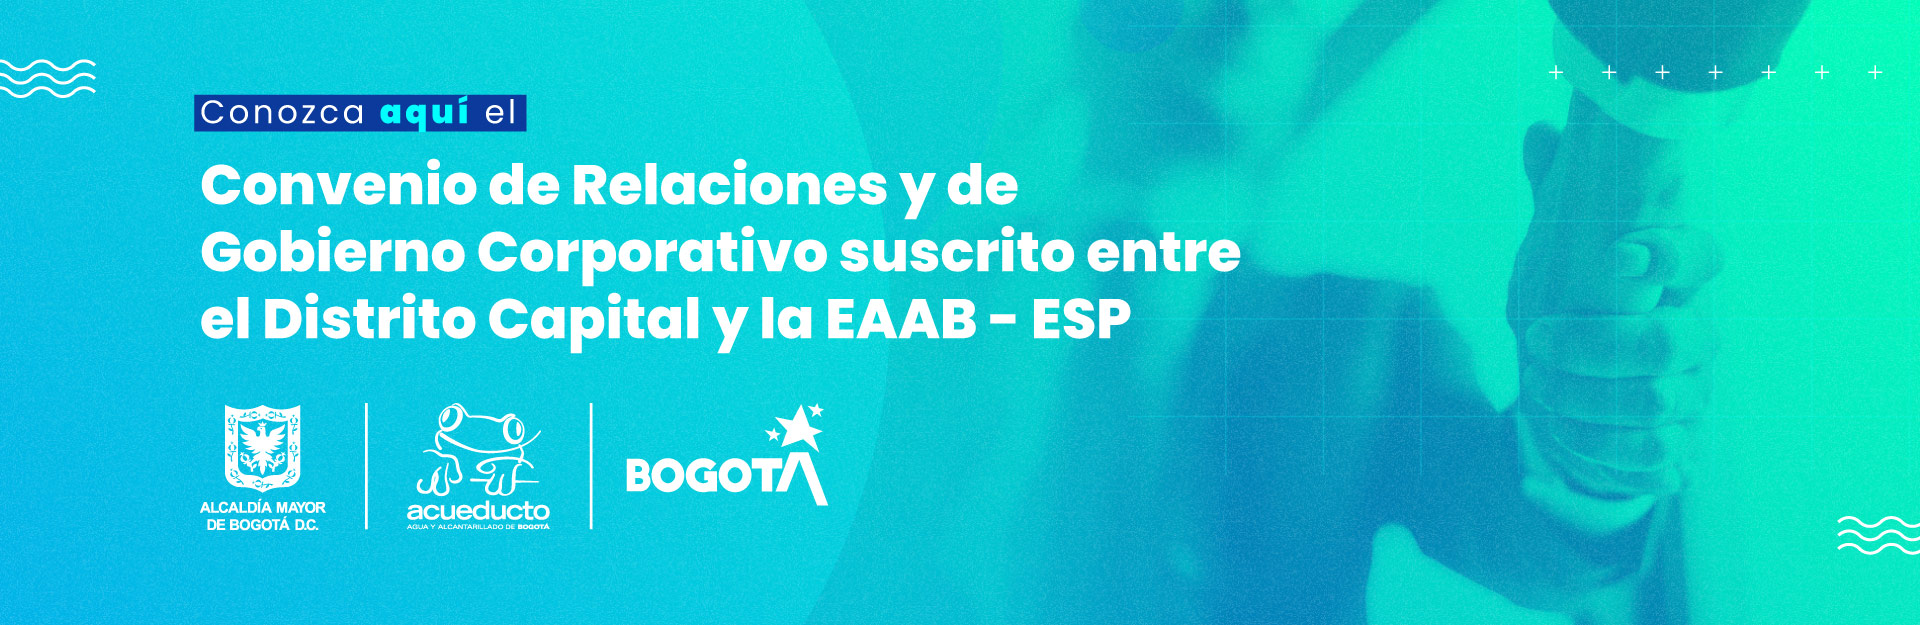 Convenio de Relaciones y de Gobierno Corporativo suscrito entre el Distrito Capital y la EAAB - ESP